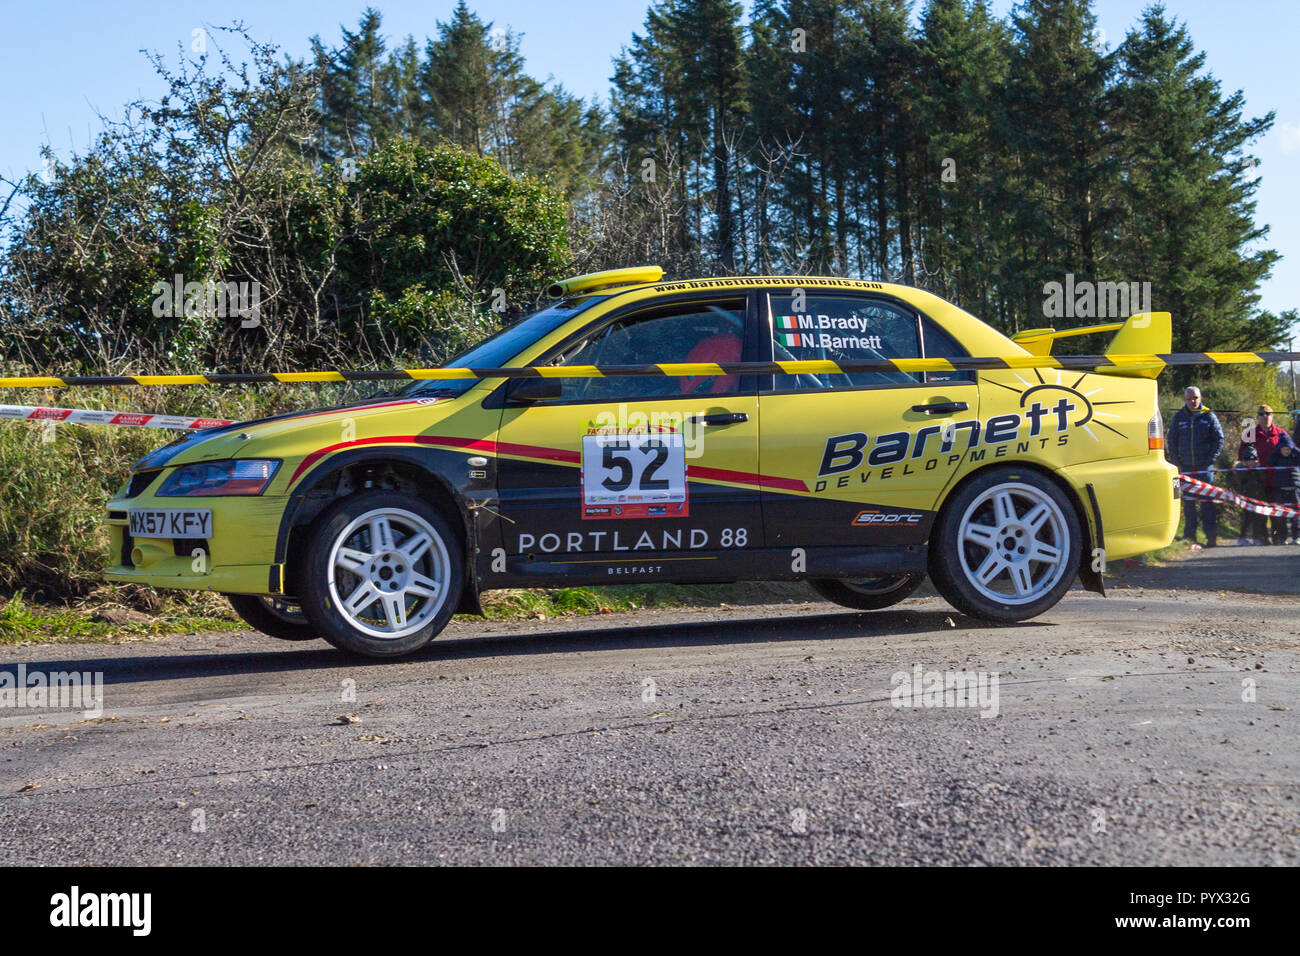 Nick Barnett und Martin Brady im Mitsubishi Evo 9 über Station 16 in der fastnet Rallye 2018 West Cork Irland Stockfoto